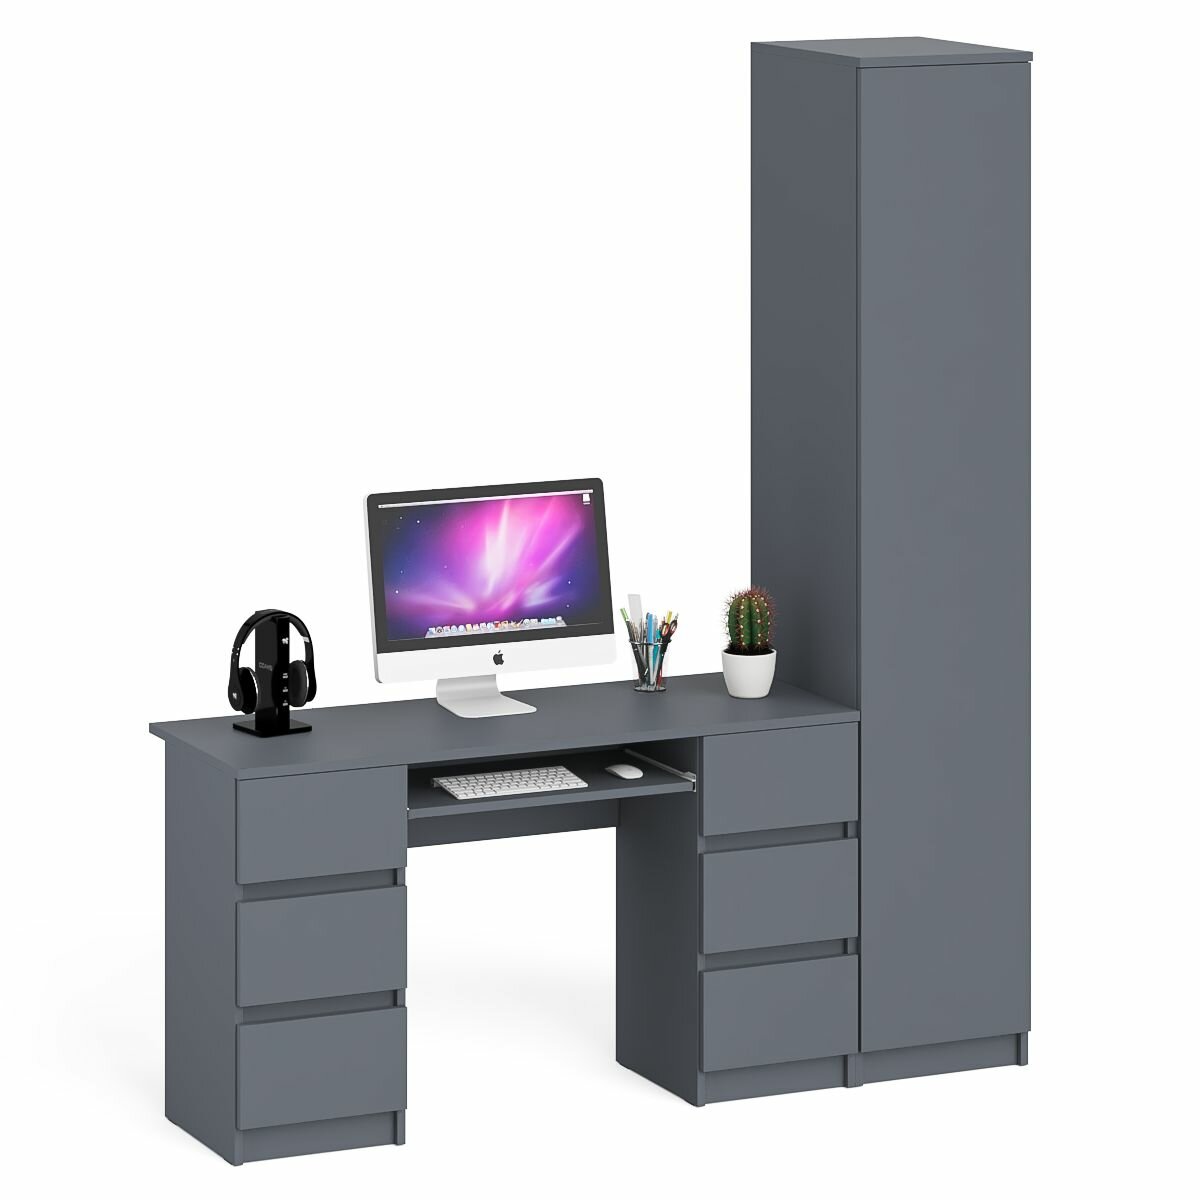 Шкаф однодверный СВК Мори МШ400.1 с компьютерным 2-х тумбовым столом цвет графит, 175,8х50,4х209,6 см.